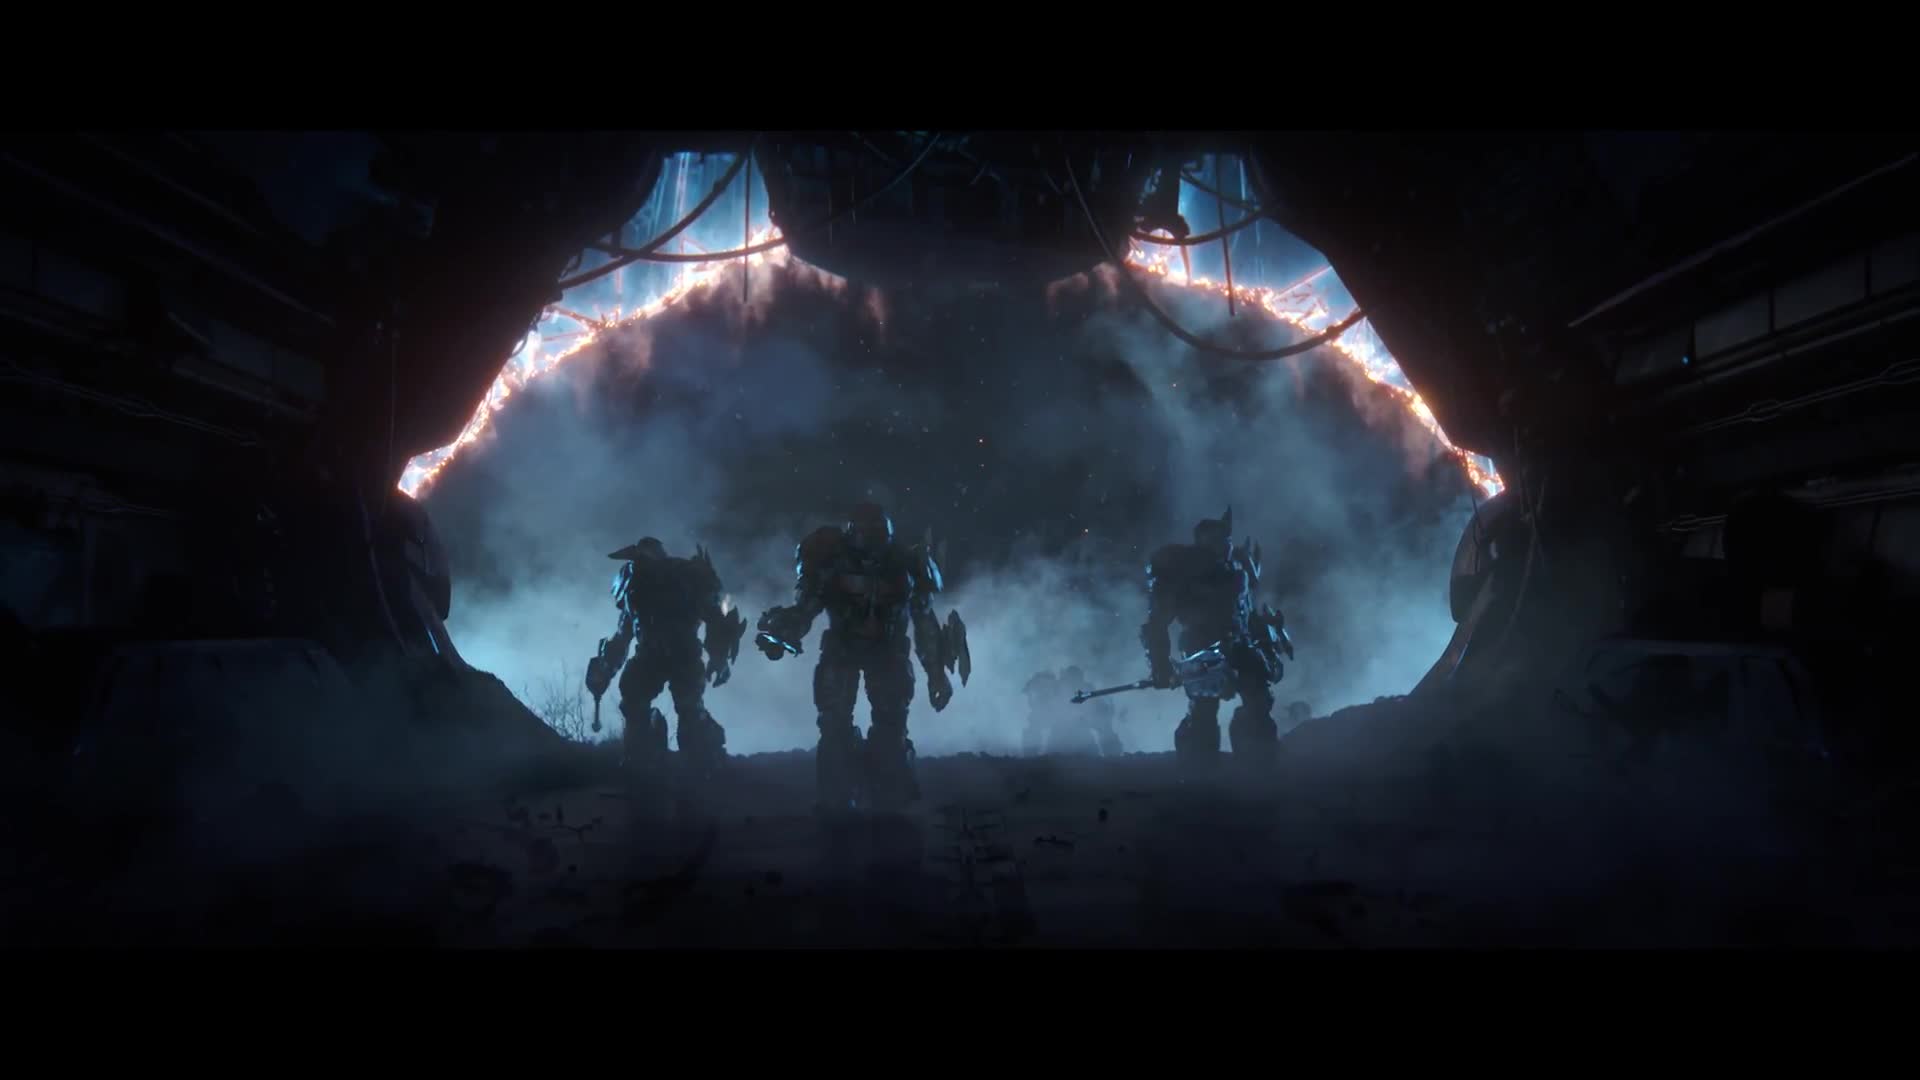 Halo Wars 2: Awakening the Nightmare - launch trailer